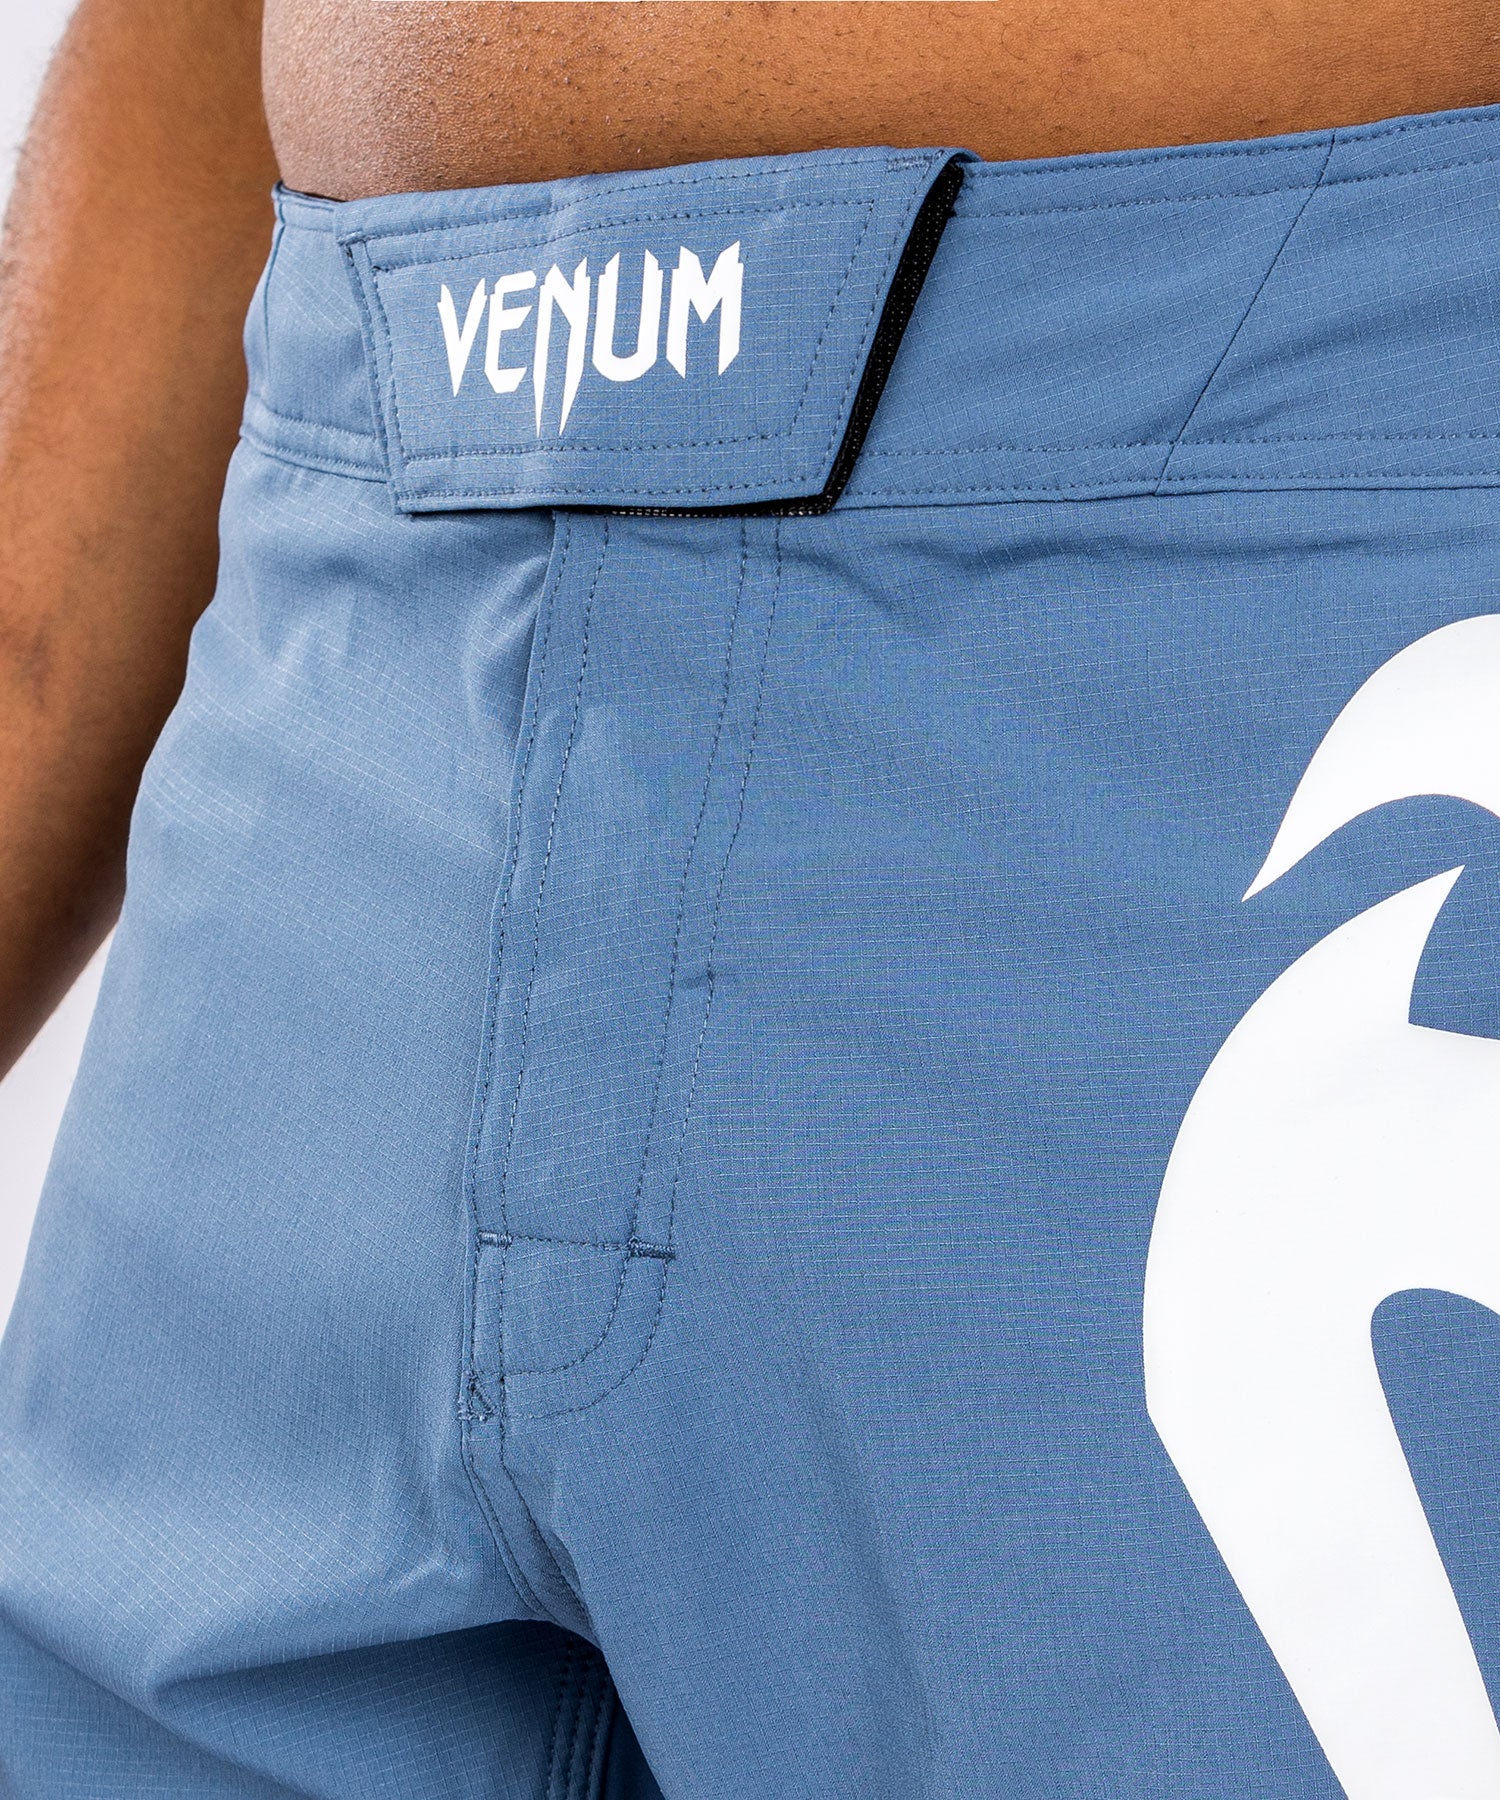 Venum Light 5.0 ファイトショーツ - ブルー/ホワイト